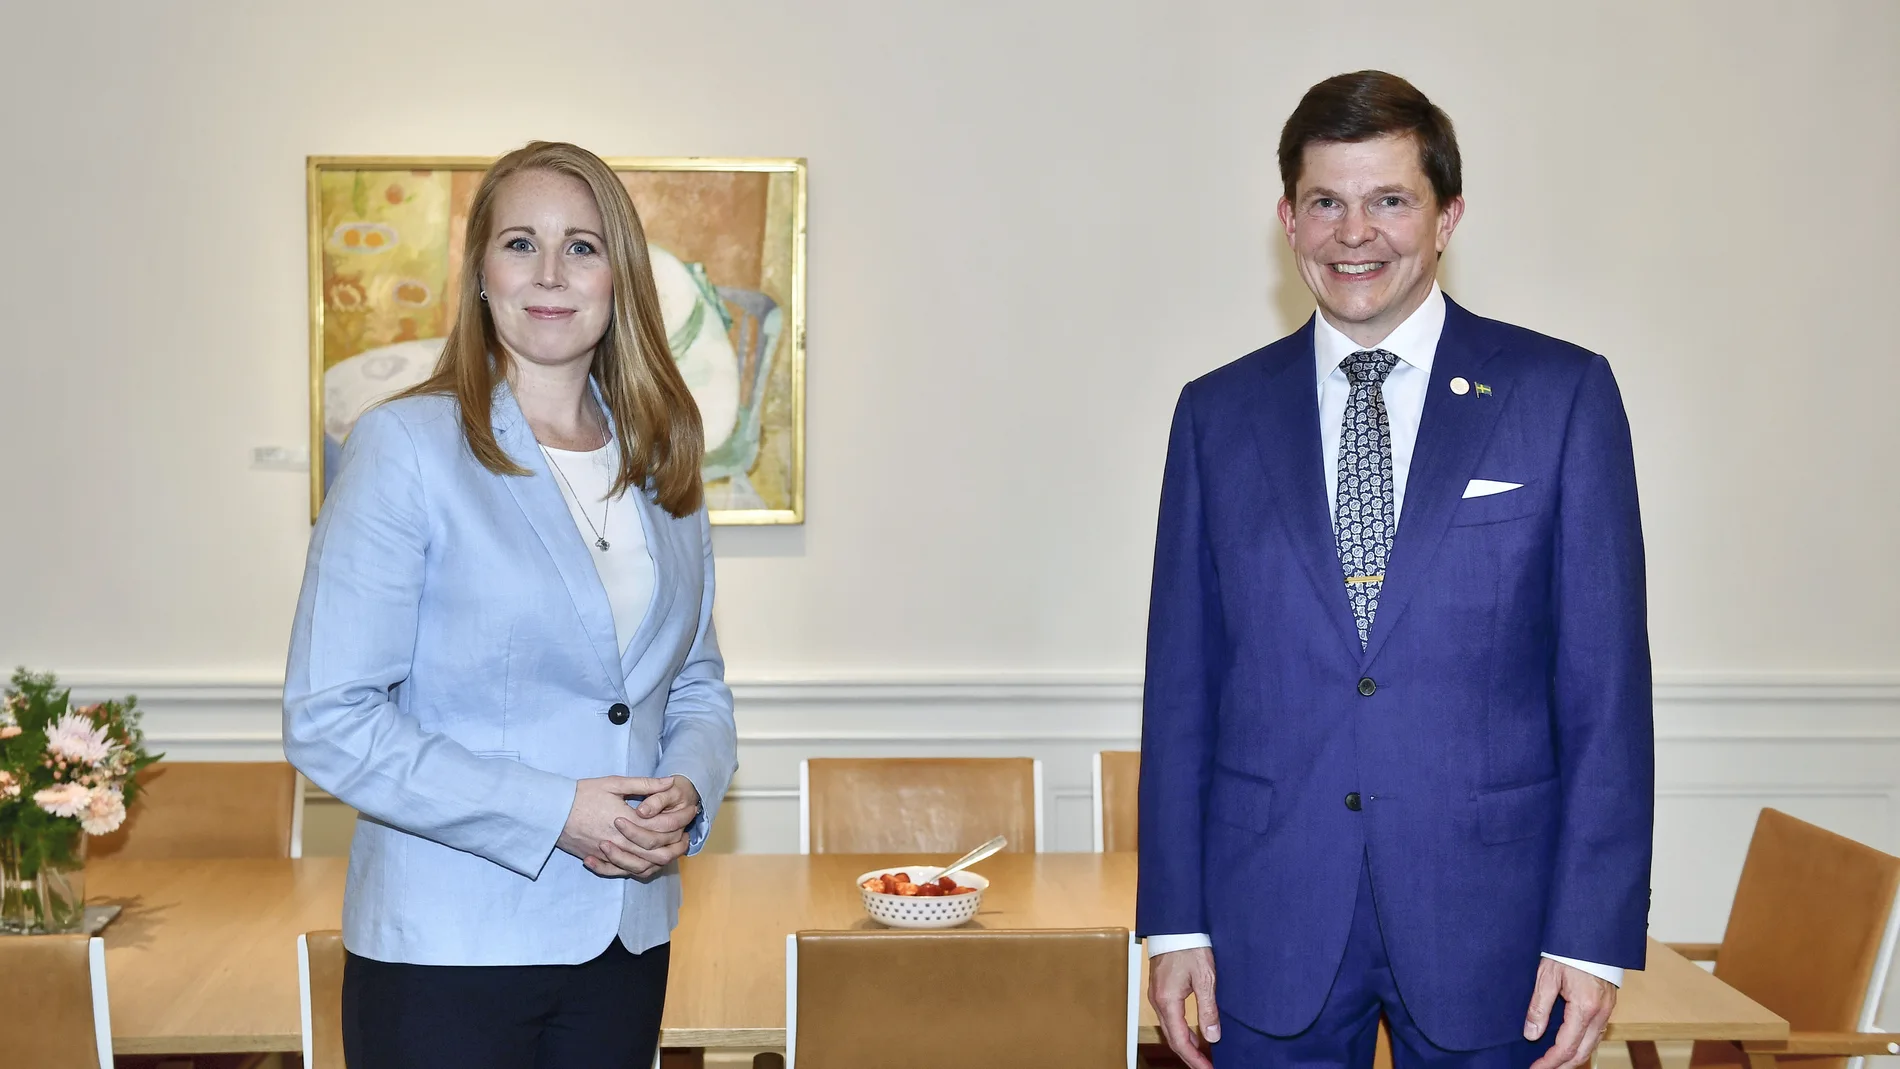 El presidente del Parlamento sueco, Andreas Norlén, recibe a la líder centrista, Annie Lööf, en la ronda con los partidos políticos